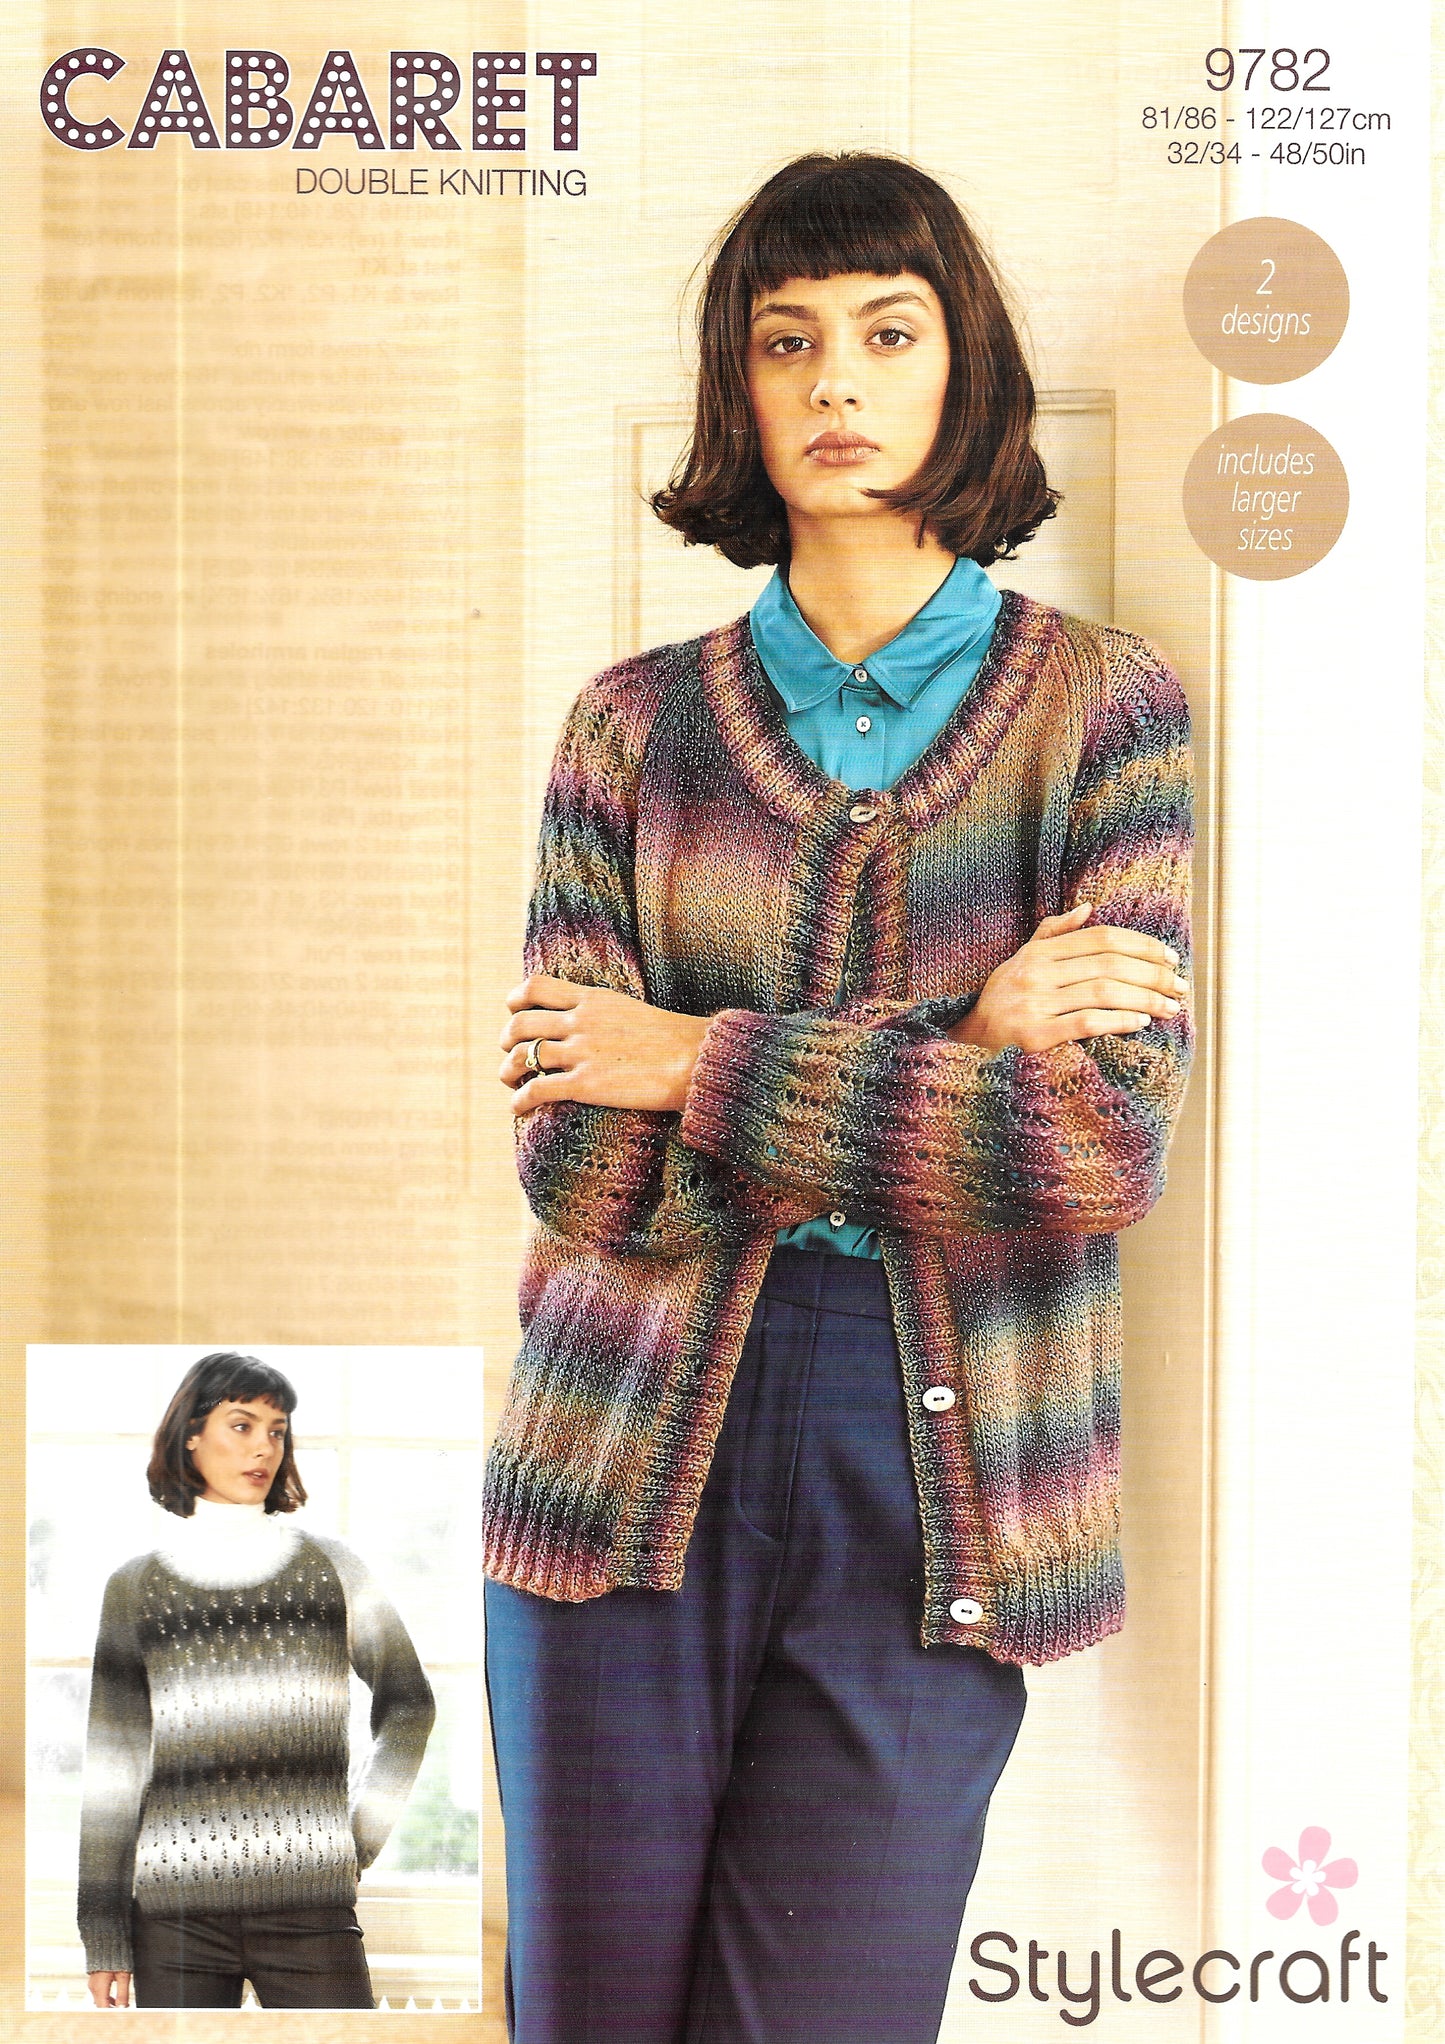 9782 Stylecraft knitting pattern. Lady's Cardigan/Sweater.  Cabaret Double Knitting Yarn